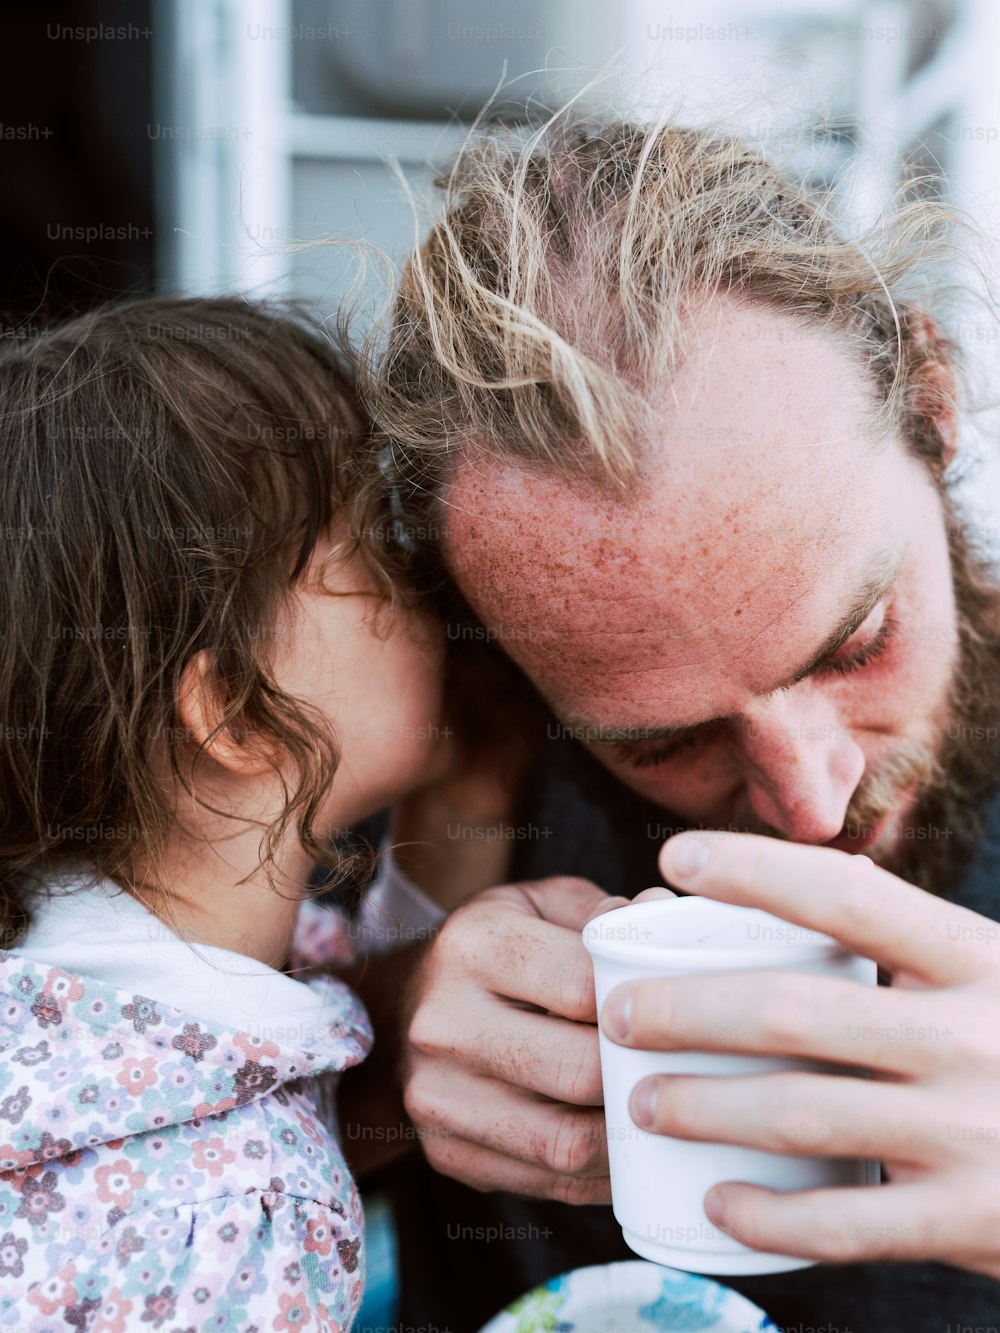 Un uomo e una bambina che bevono da una tazza